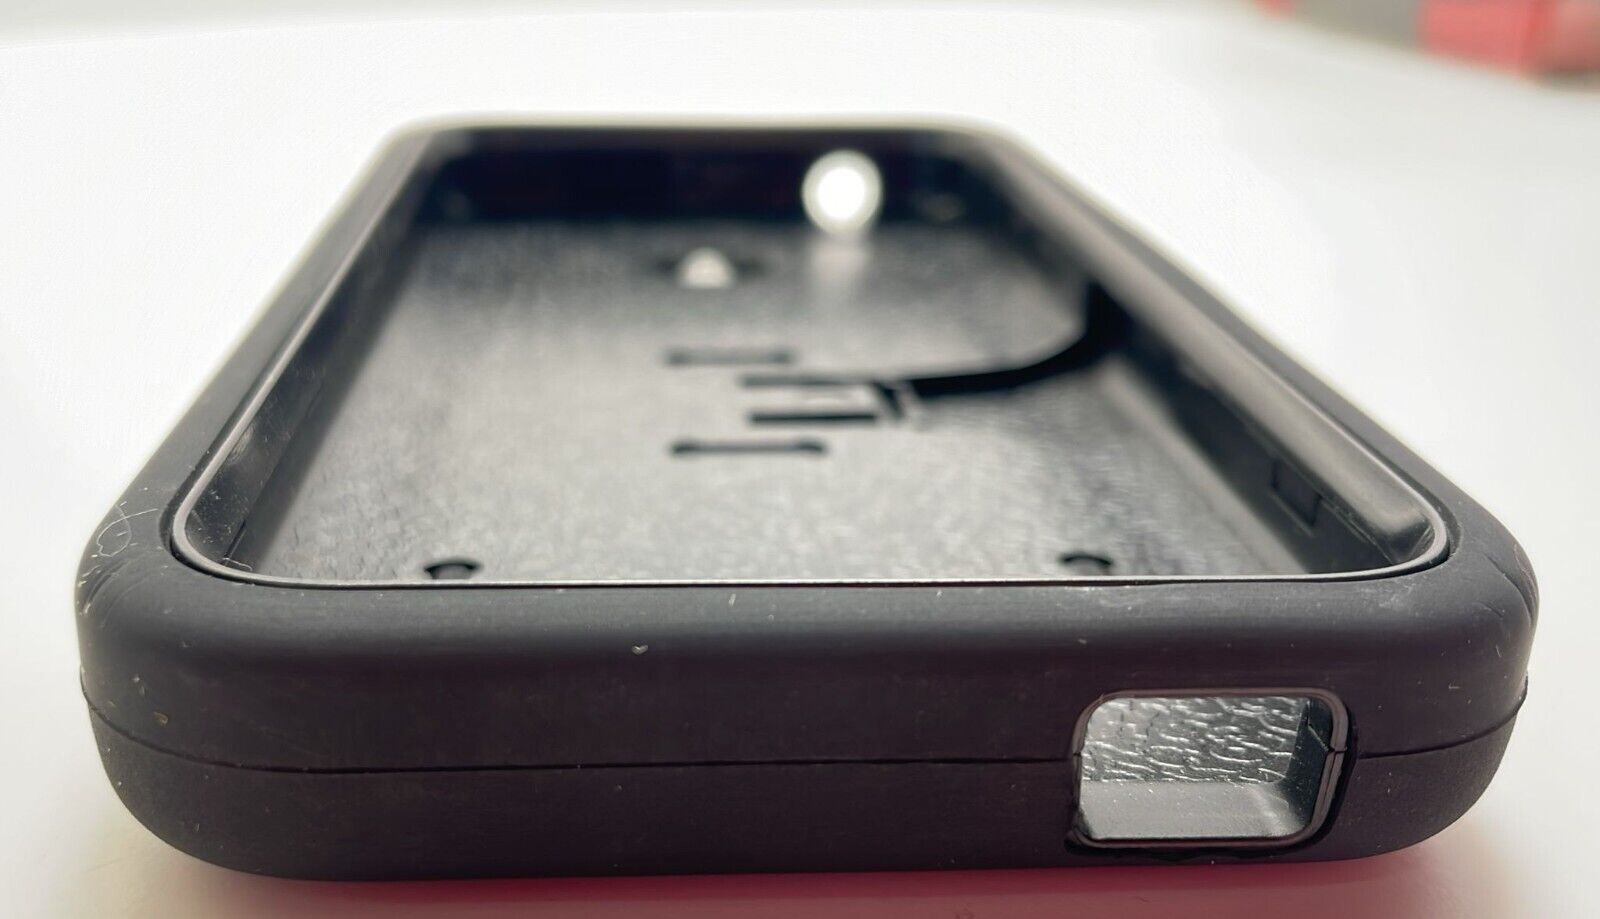 Sonne Premium Case with Kickstand for HTC Desire 510, Black Sonne - фотография #5